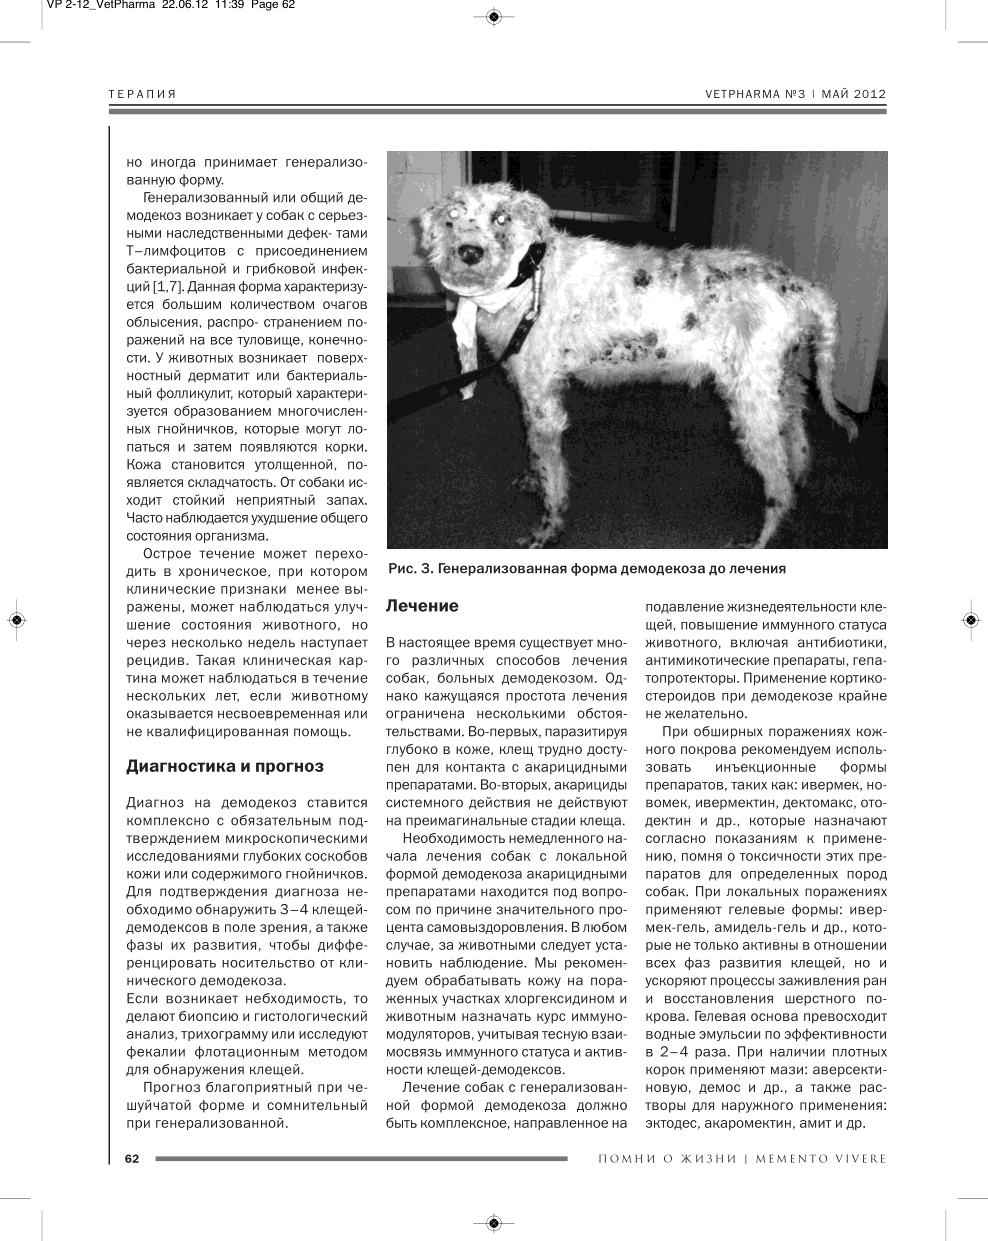 Демодекоз у собак: причины, симптомы и лечение заболевания